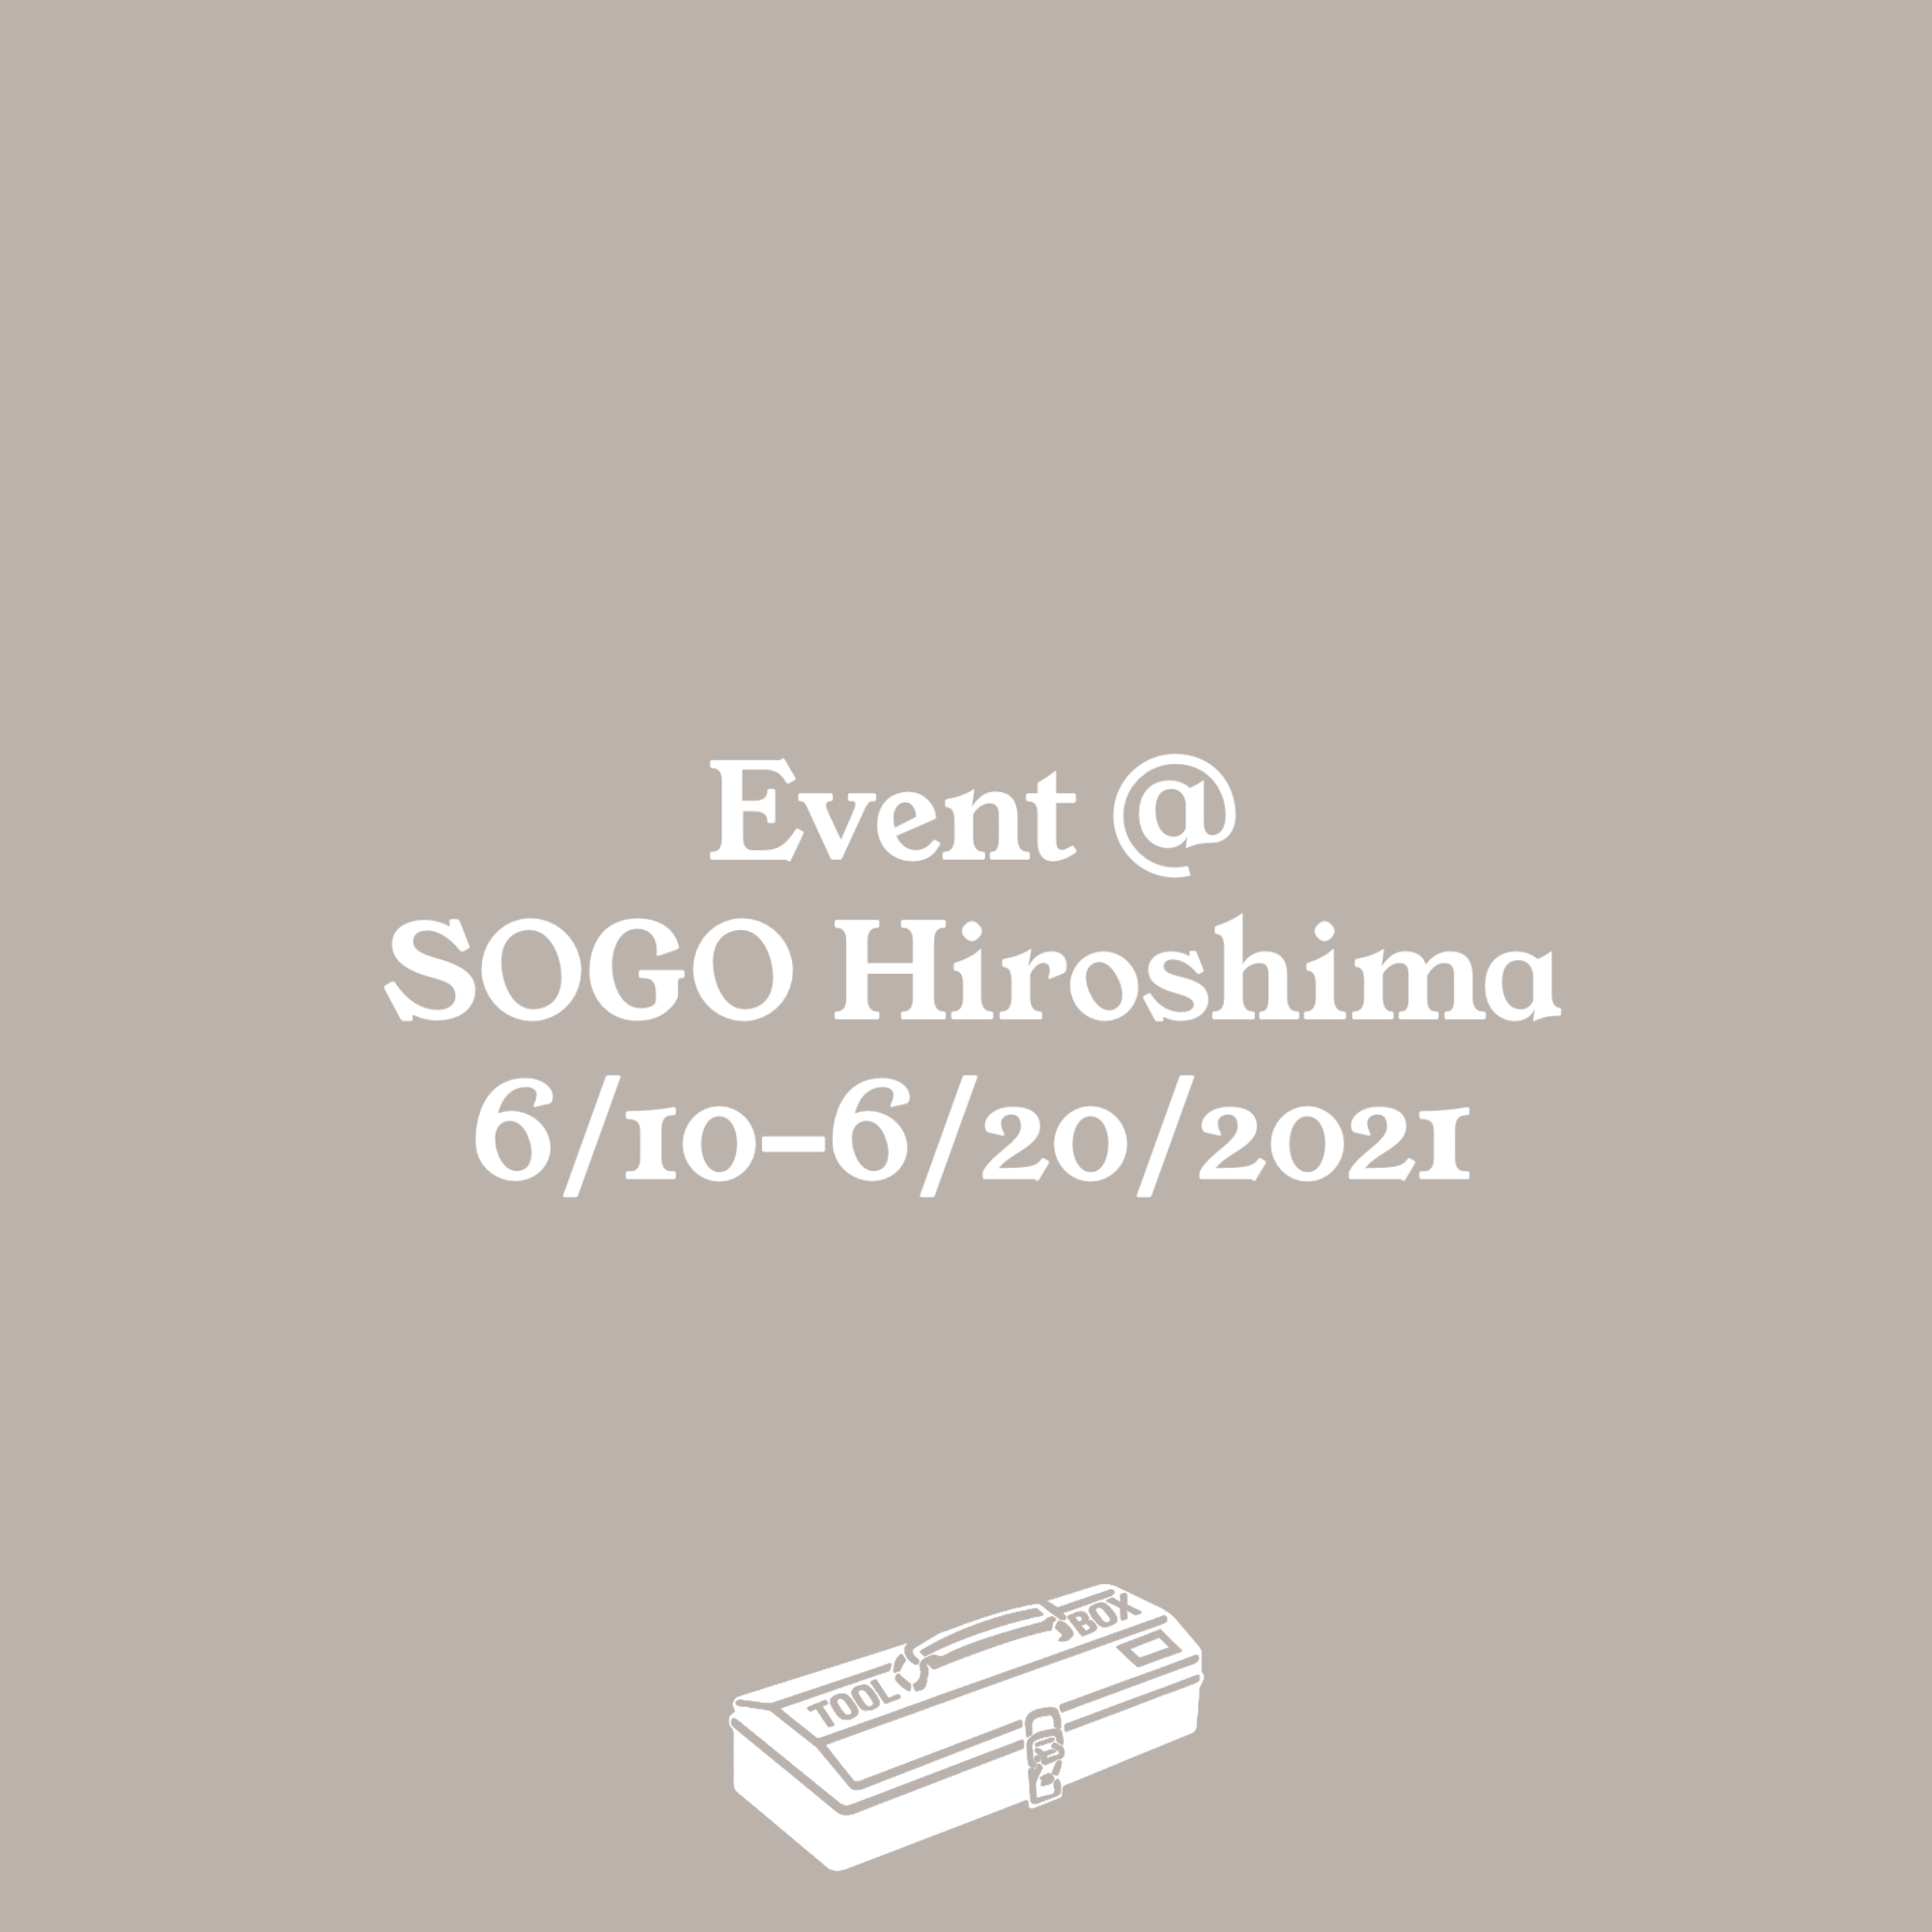 Event @ SOGO